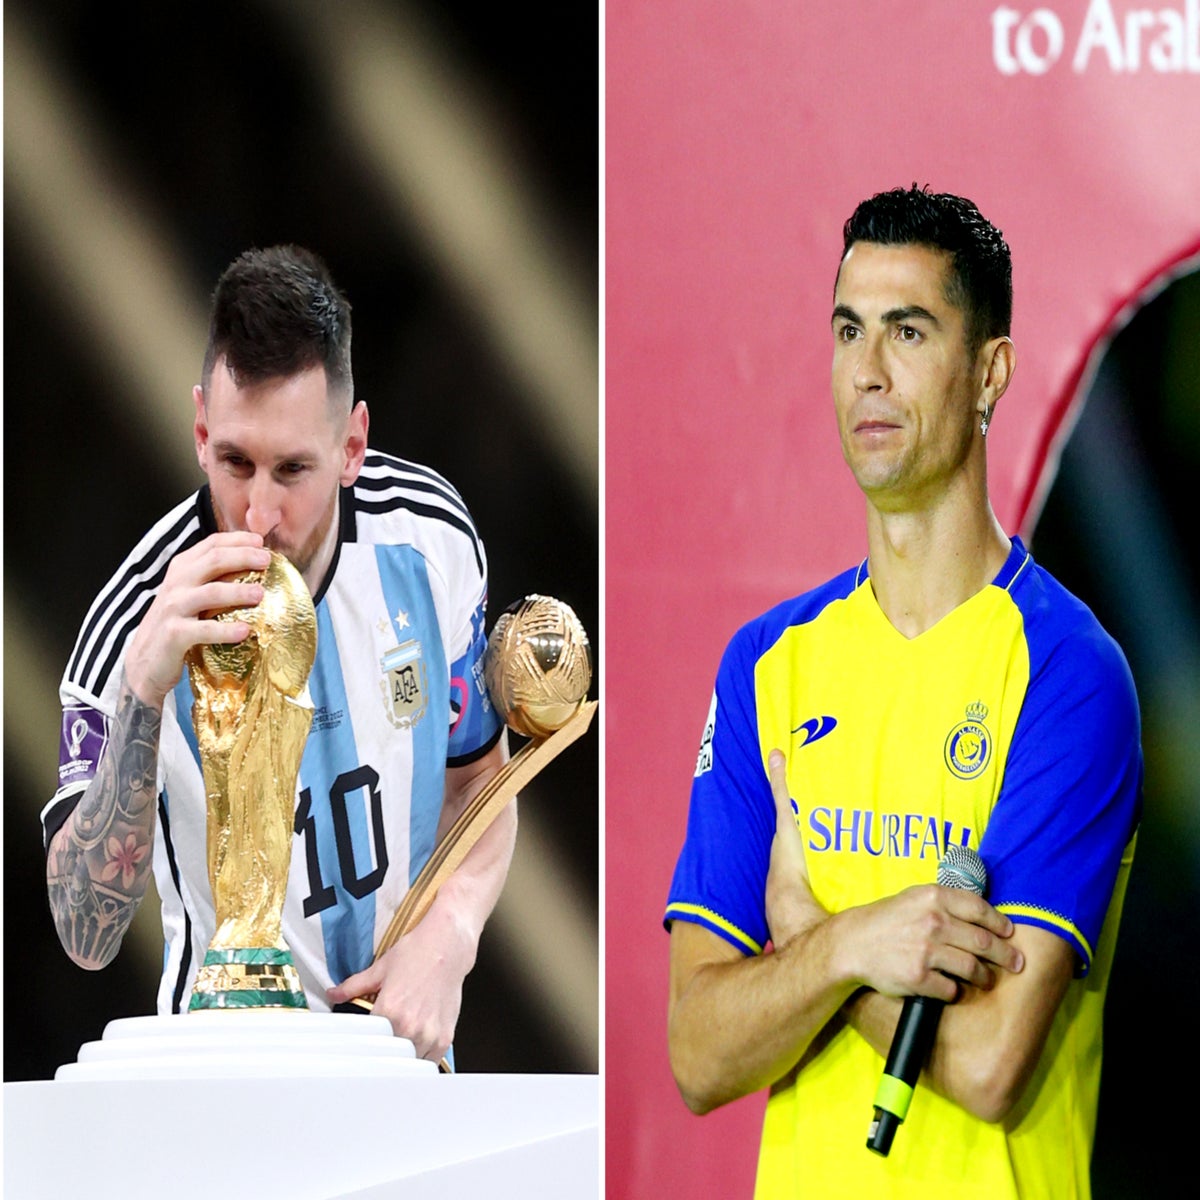 Gap between Messi and Ronaldo has never been clearer